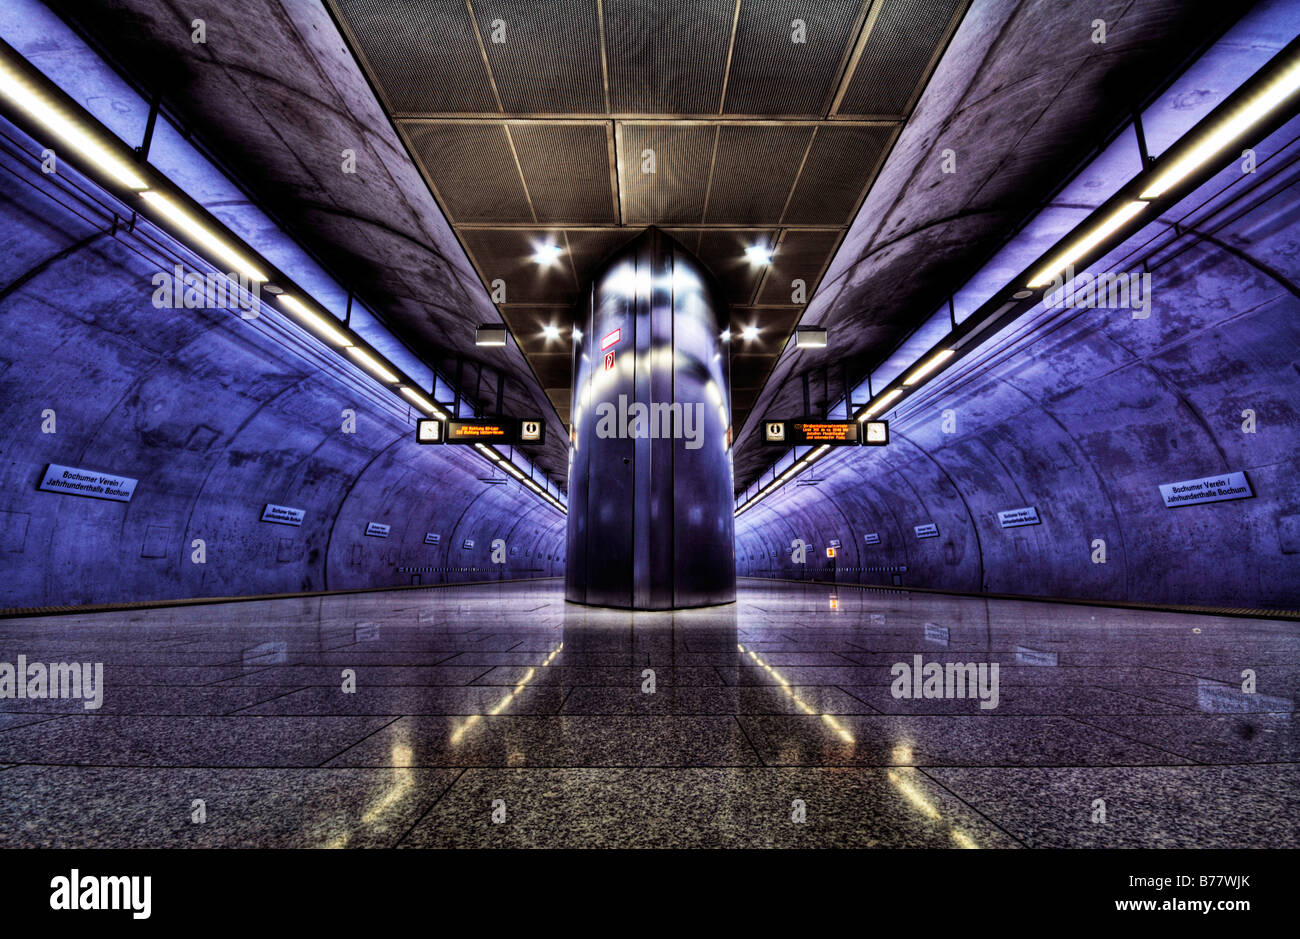 Jahrhunderthalle subway station, Bochum, North Rhine-Westphalia, Germany, Europe Stock Photo